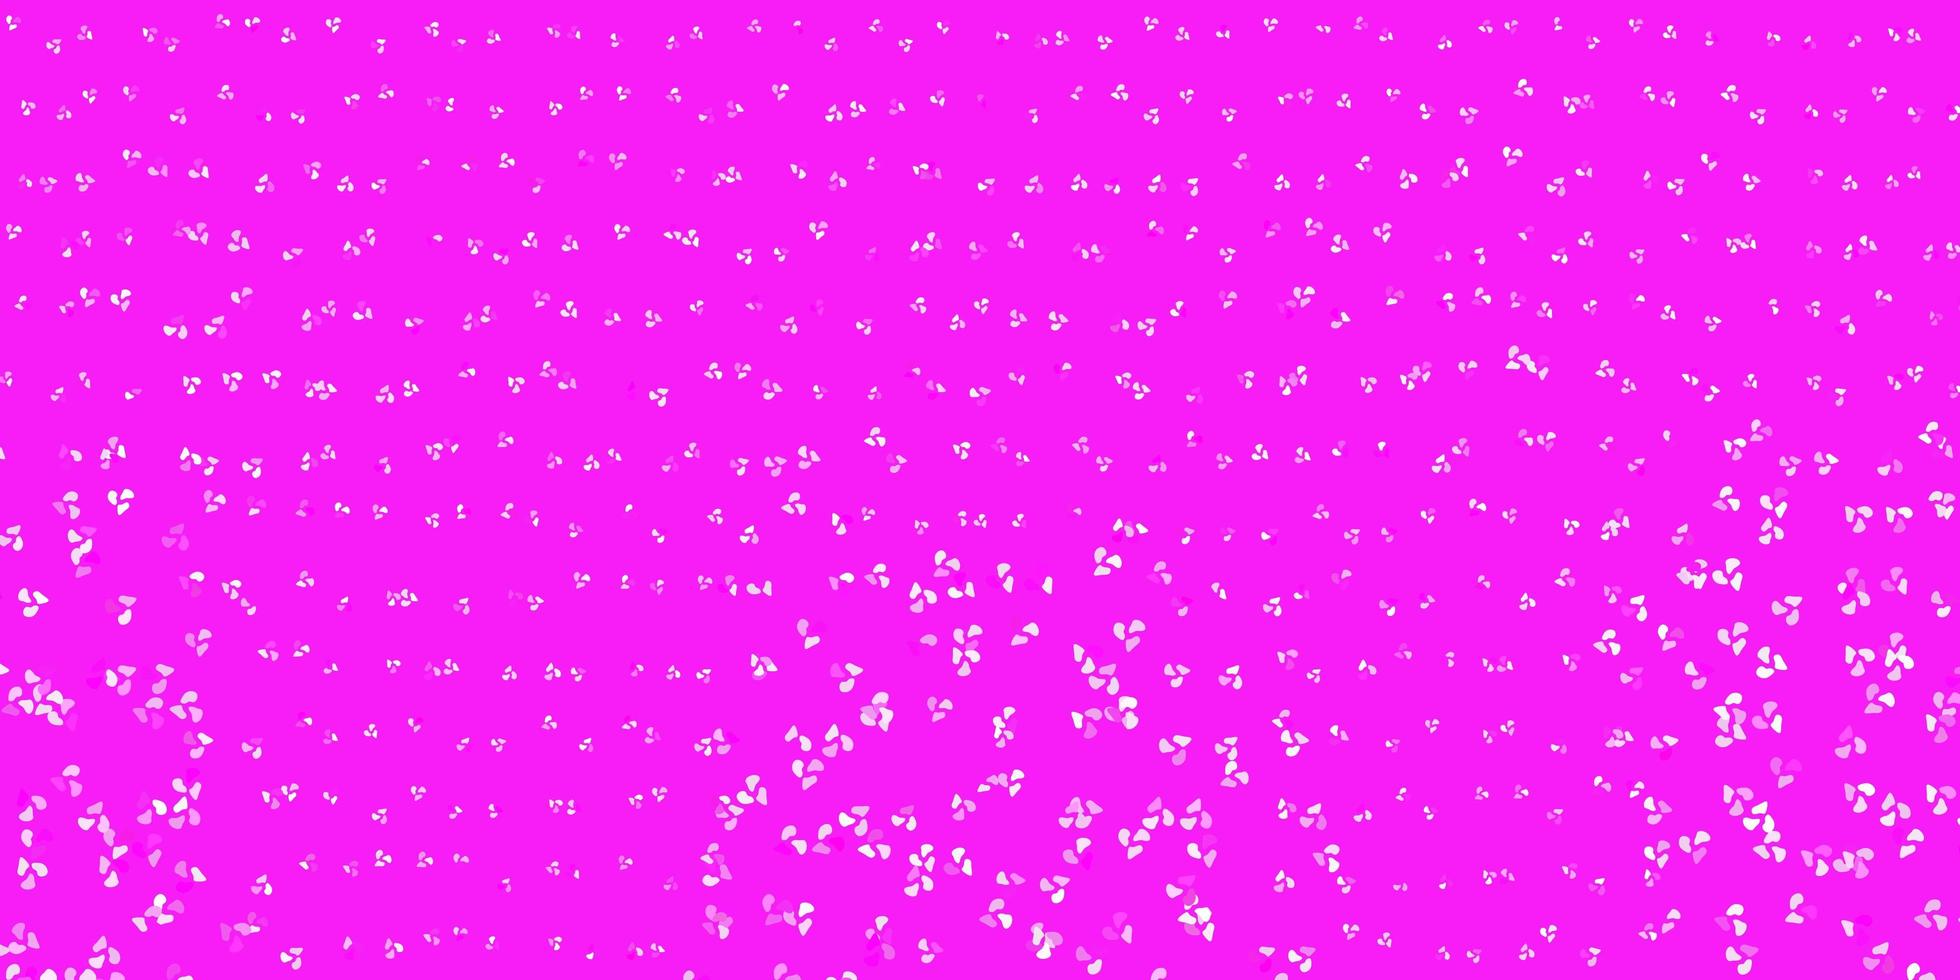 modelo de vetor rosa claro com formas abstratas.